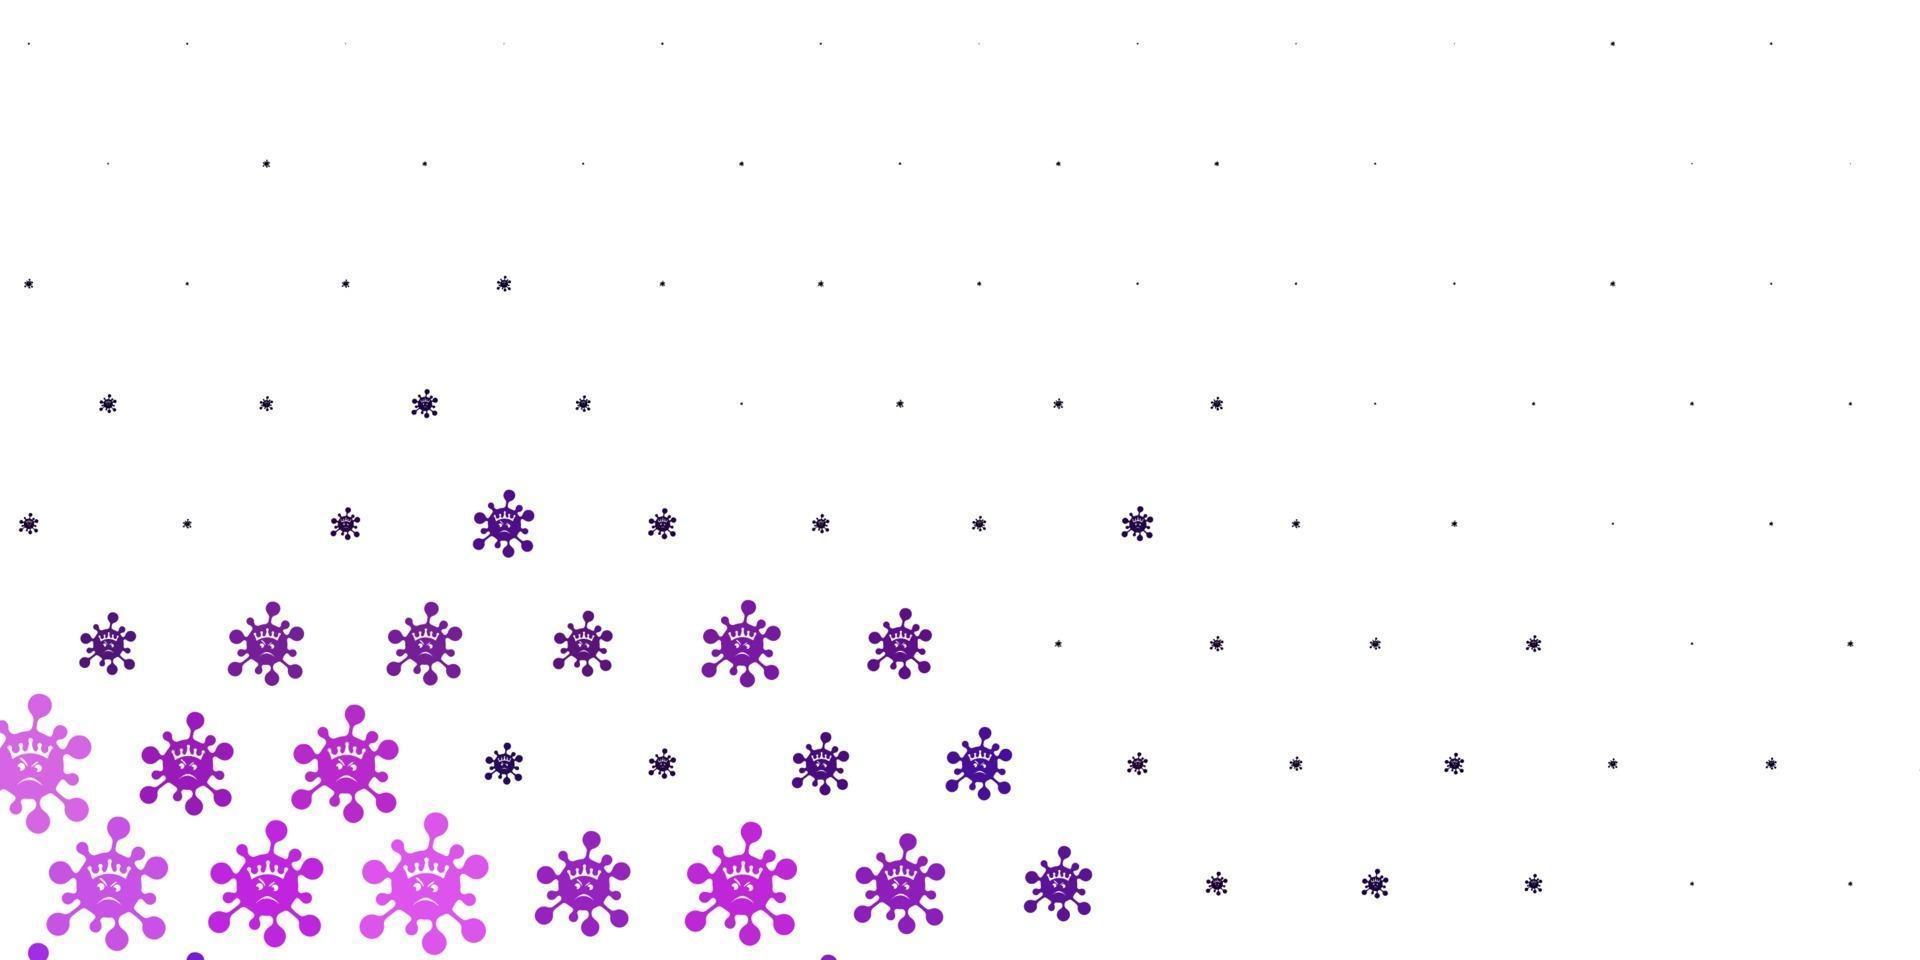 patrón de vector púrpura claro con elementos de coronavirus.